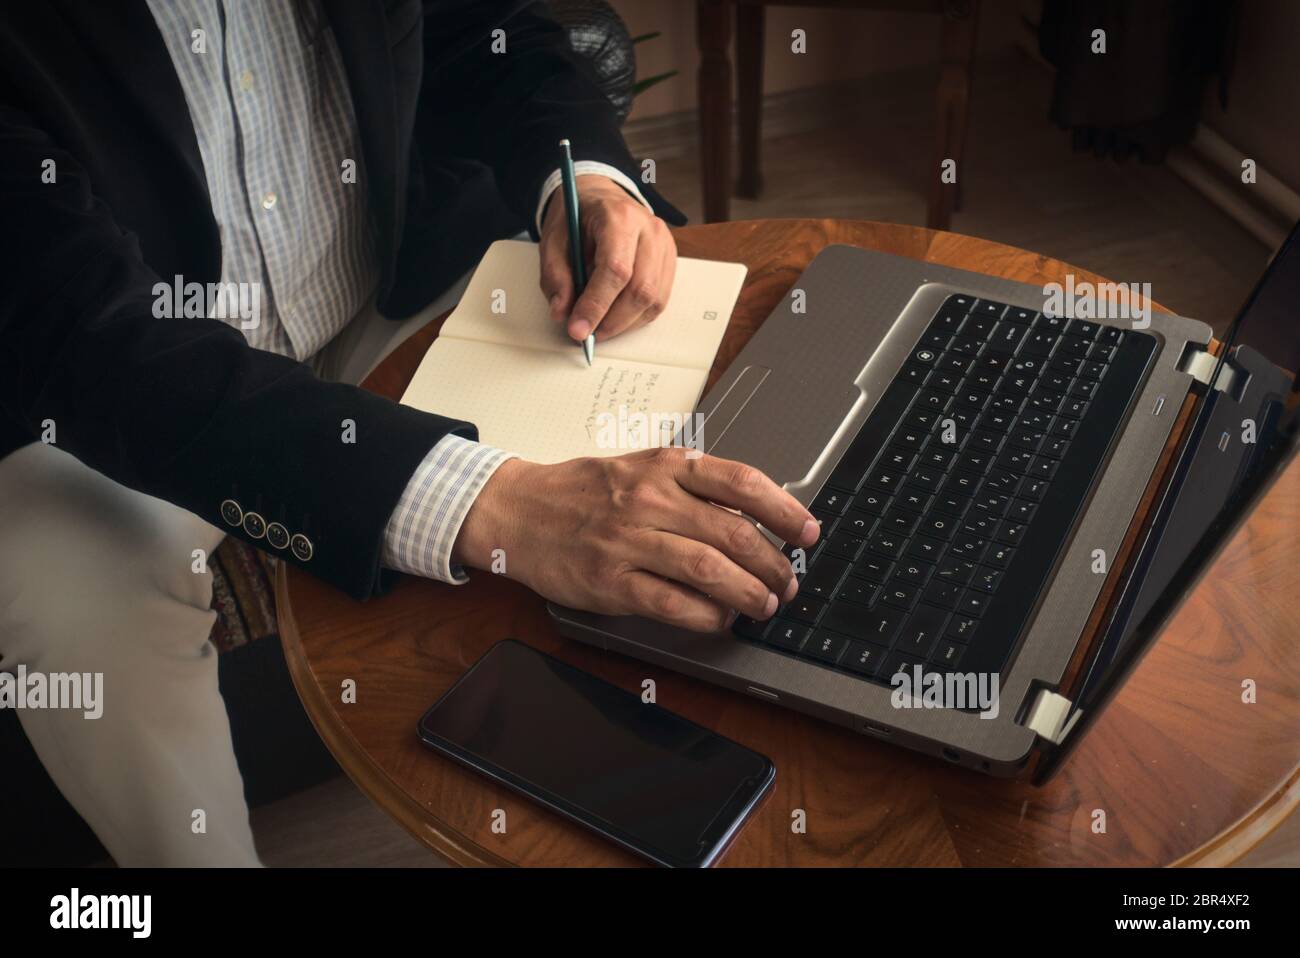 Professioneller Senior, der mit einem Stift Notizen macht, während er mit seinem Laptop eine Konferenz führt und ein Telefon daneben auf einem Tisch steht Stockfoto